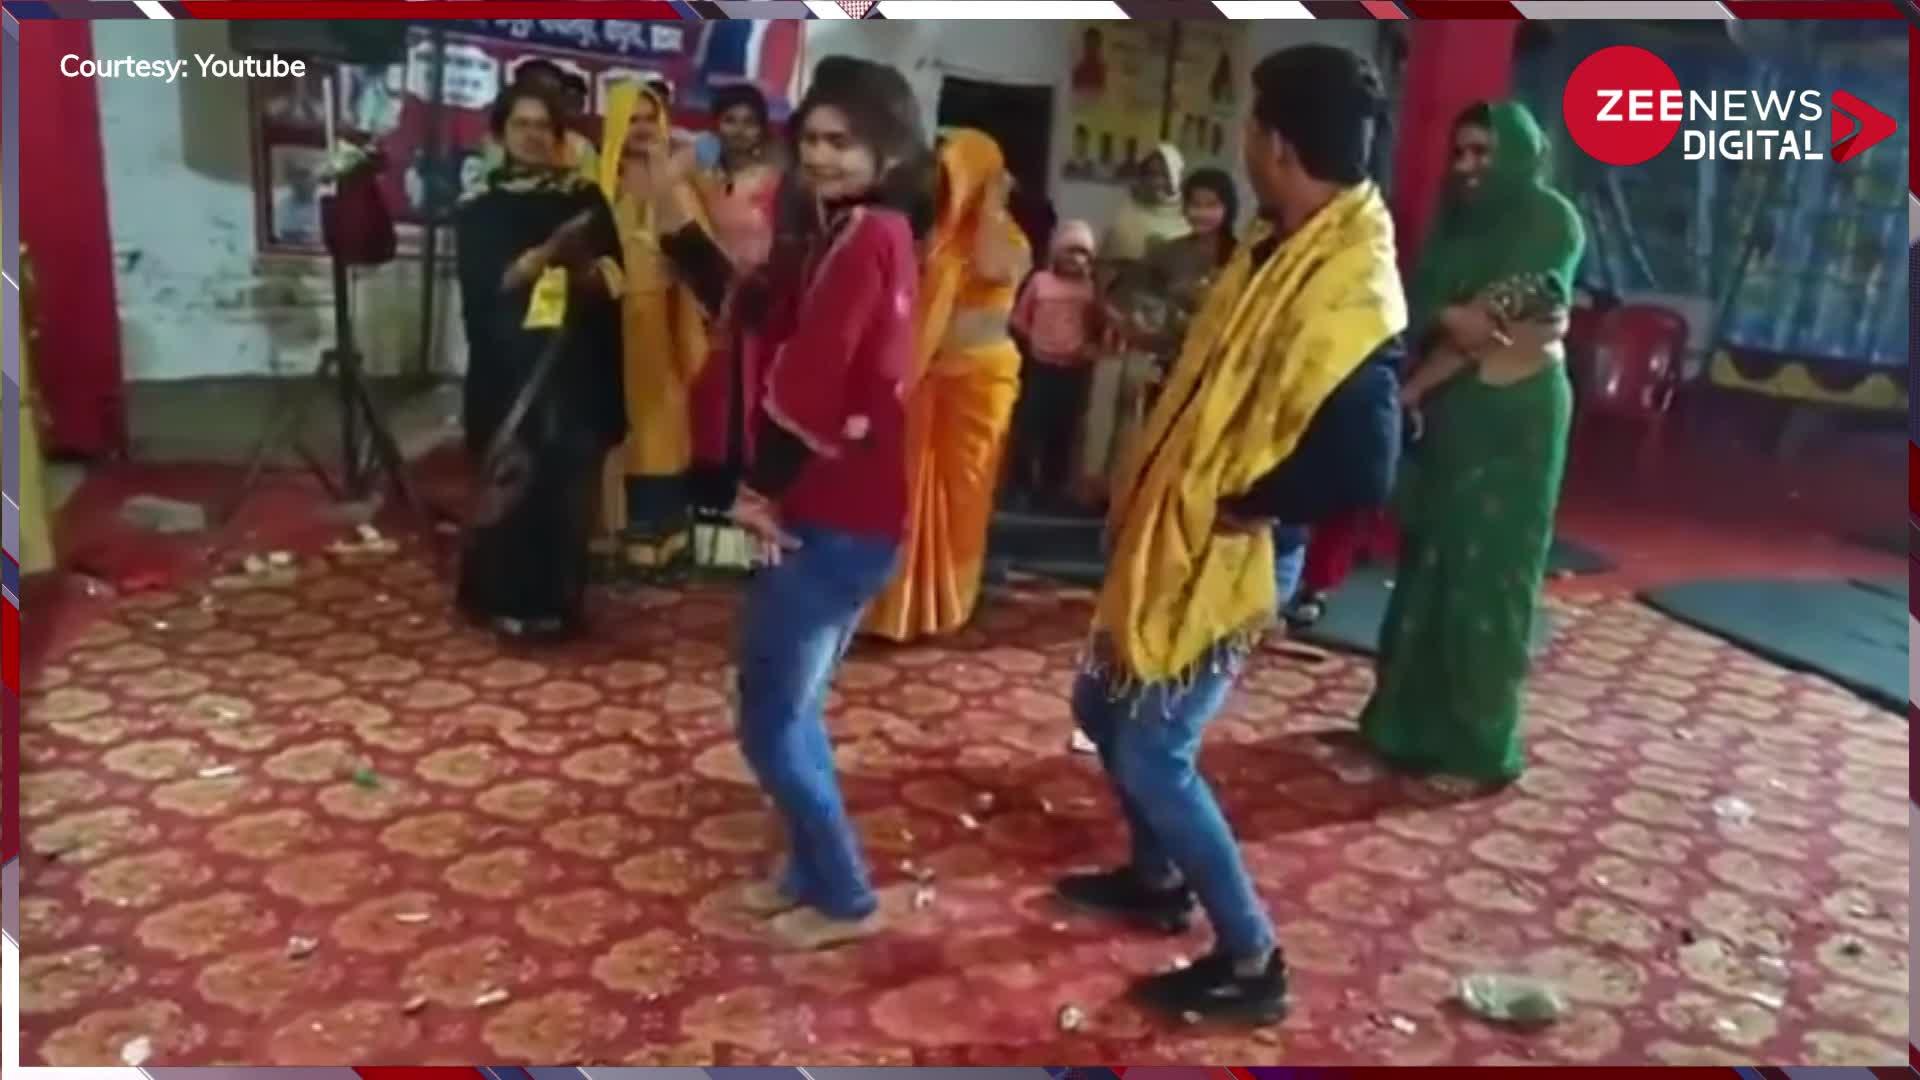 Jija Sali Video: भरी महफिल में जीजा-साली ने जमाया रंग, दोनों का हॉट डांस देख परिवार रह गया हक्का-बक्का, वीडियो हुआ वायरल